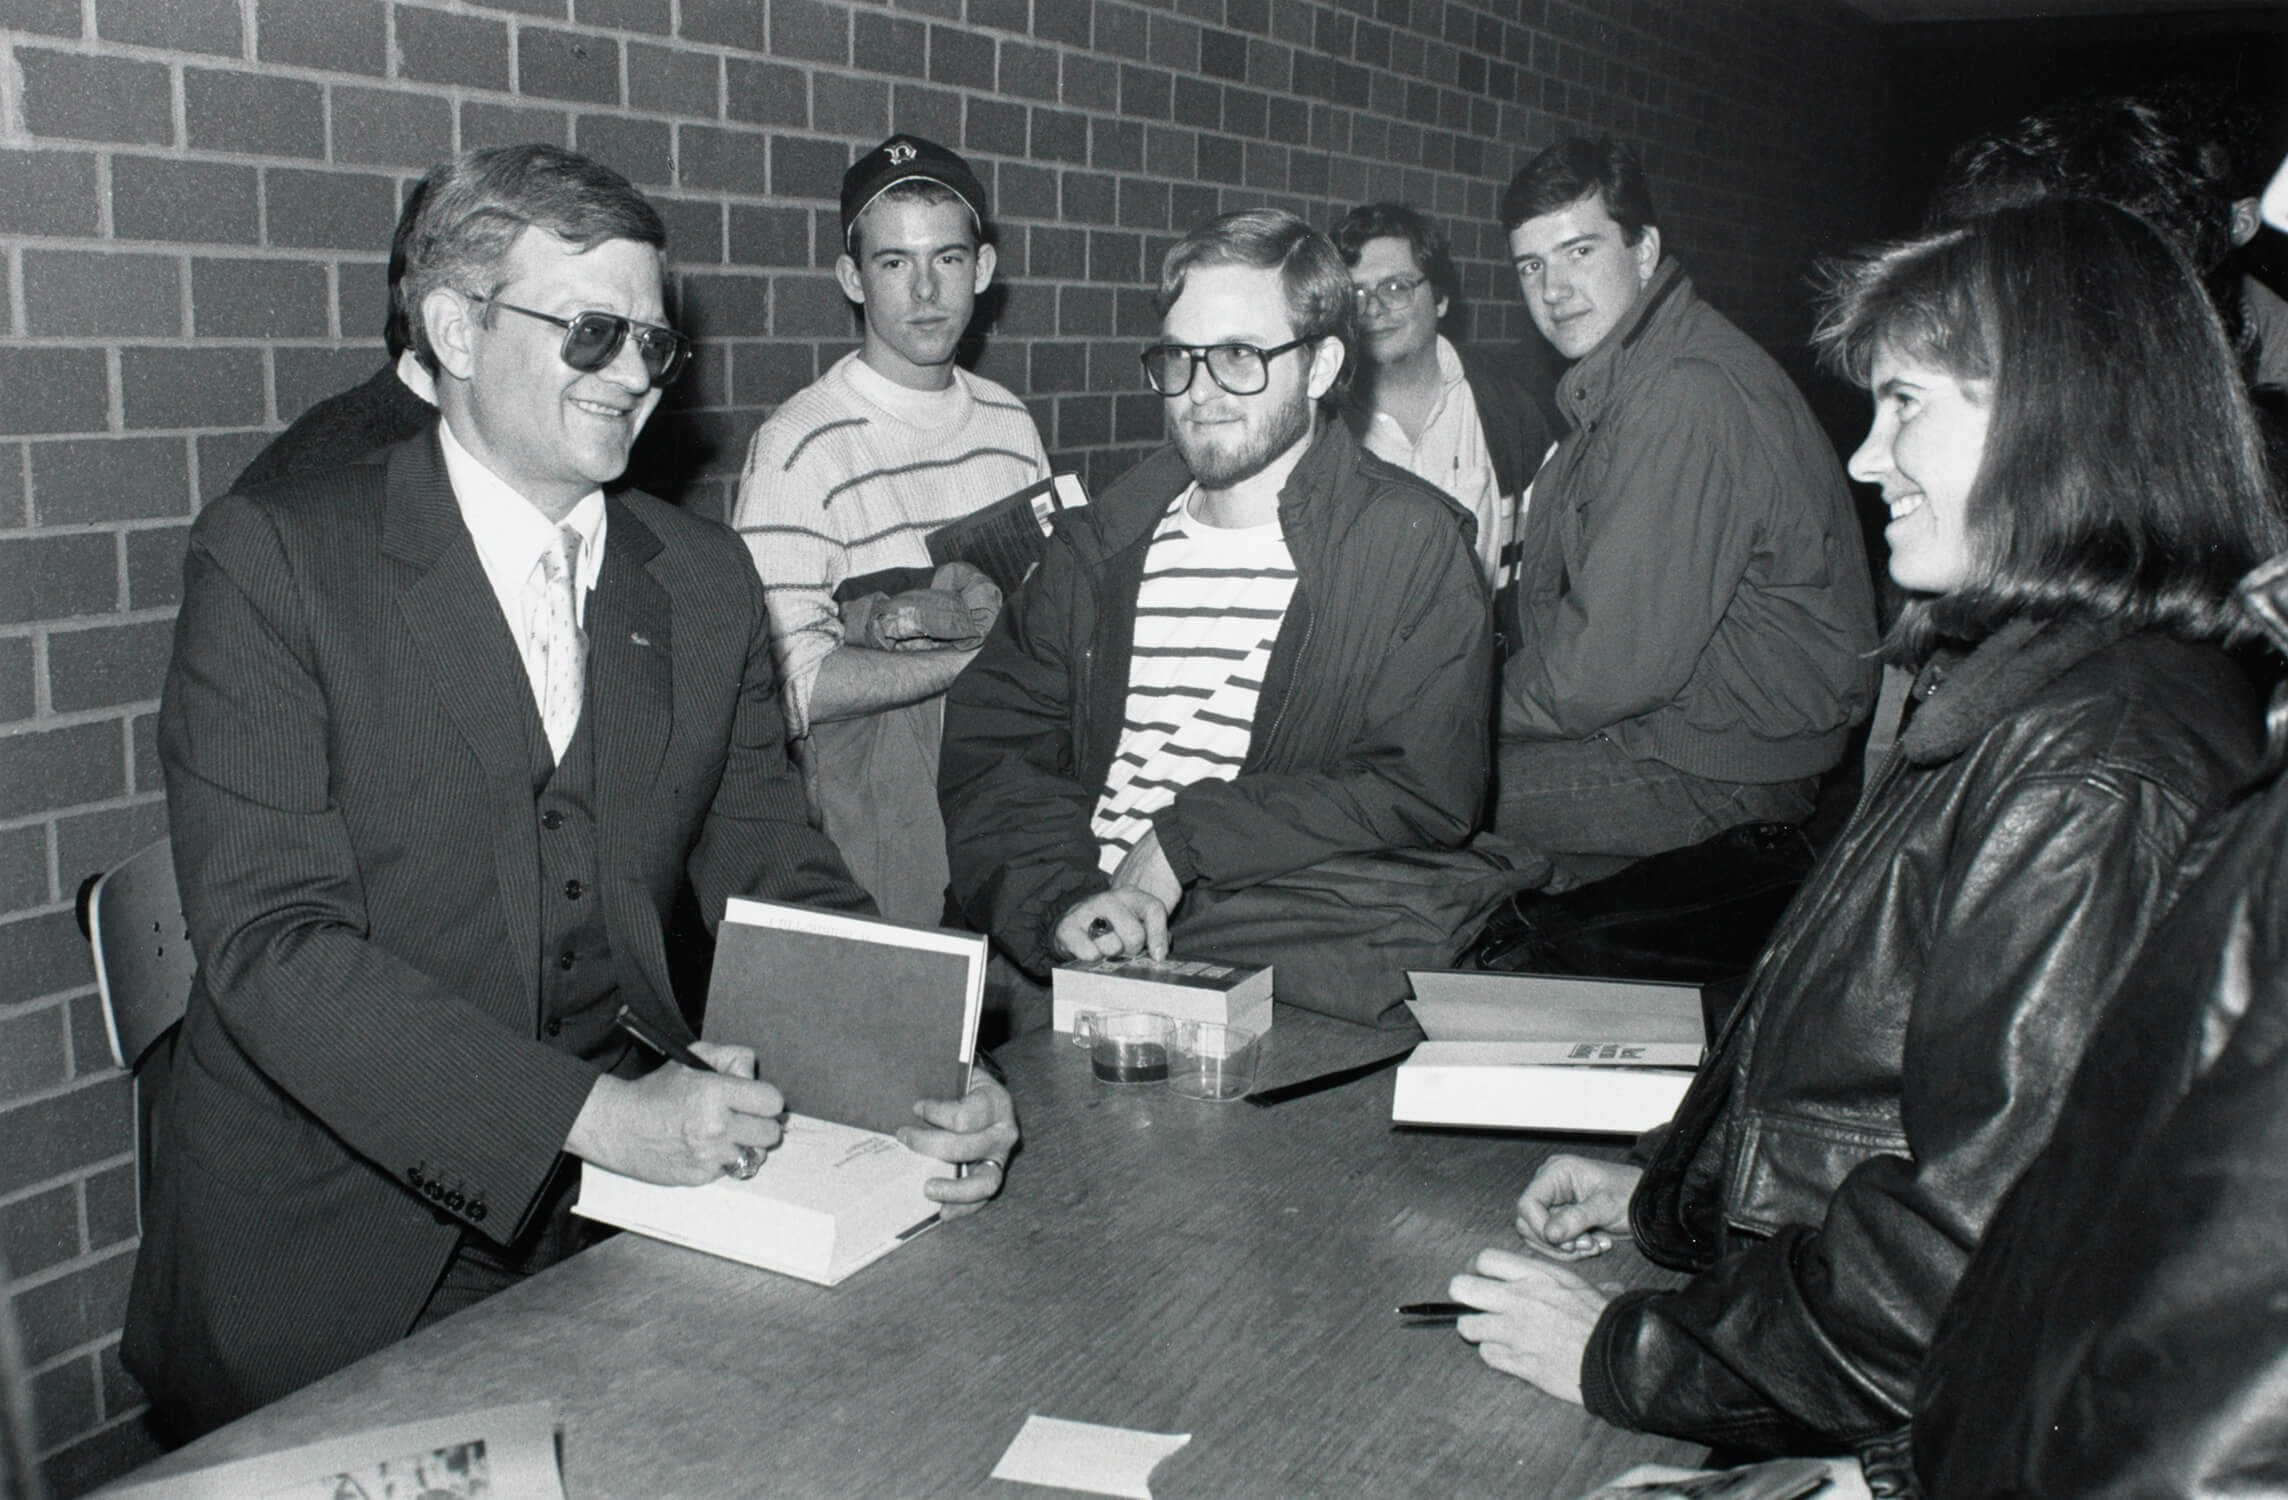 Автор политических бестселлеров Том Клэнси (слева) в библиотеке Бостонского колледжа, ноябрь 1989 / wikipedia.org